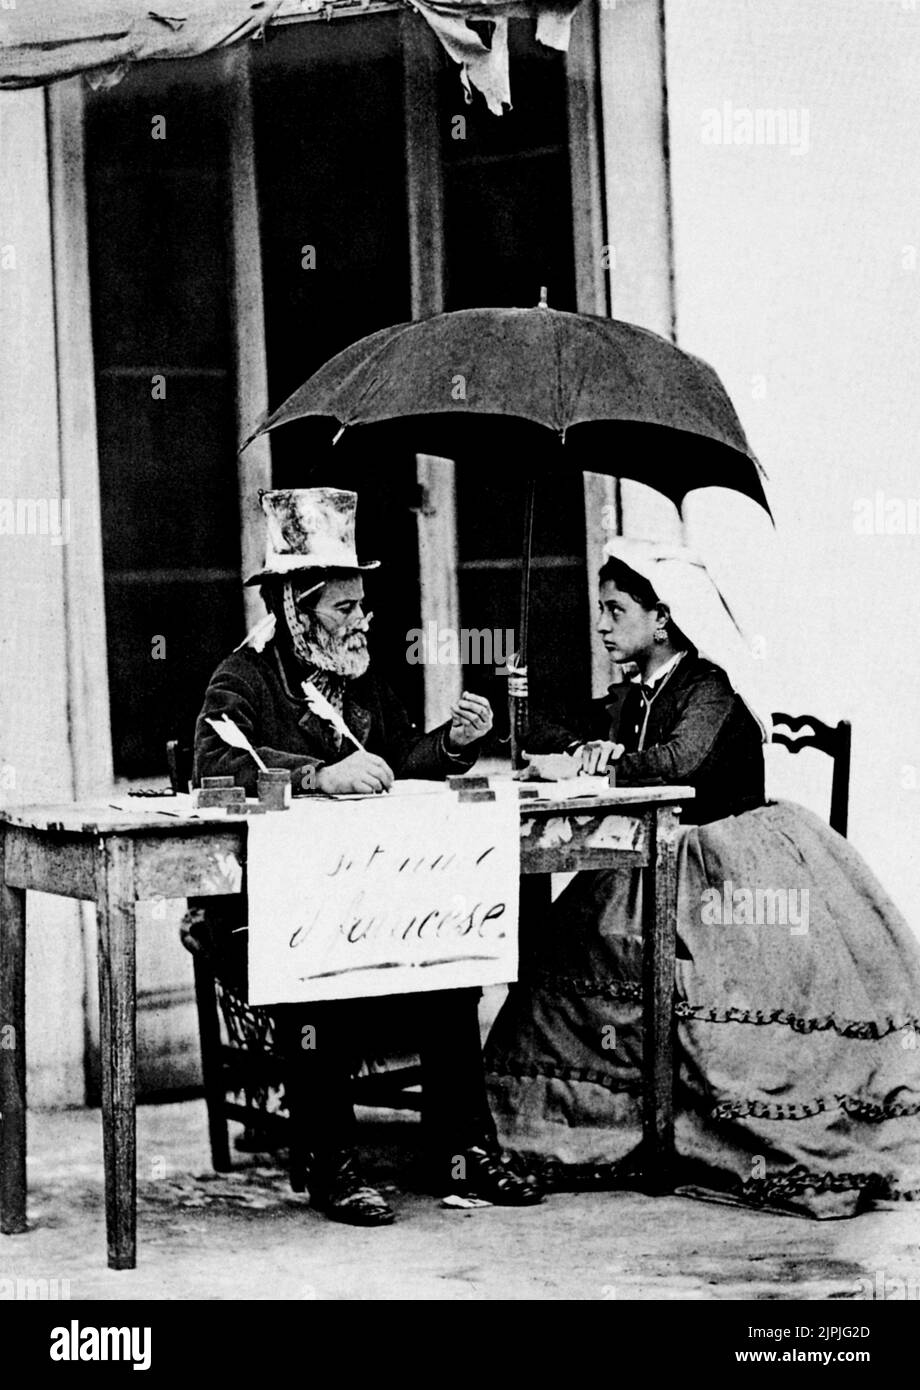 1870 environ , Naples , Italie : Une photo populaire de GIORGIO SOMMER à l'employé pubblic Lo SCRIVANO TRADICO - si tradice dal francese ) - NAPOLI - FOLKLORE - SCENA POPOLARE - FOTO STORICA - HISTOIRE - top-Hat - cappello a cilindro - tradnna d'oca - ombrello - parapluie - traslator ---- Archivio GBB Banque D'Images